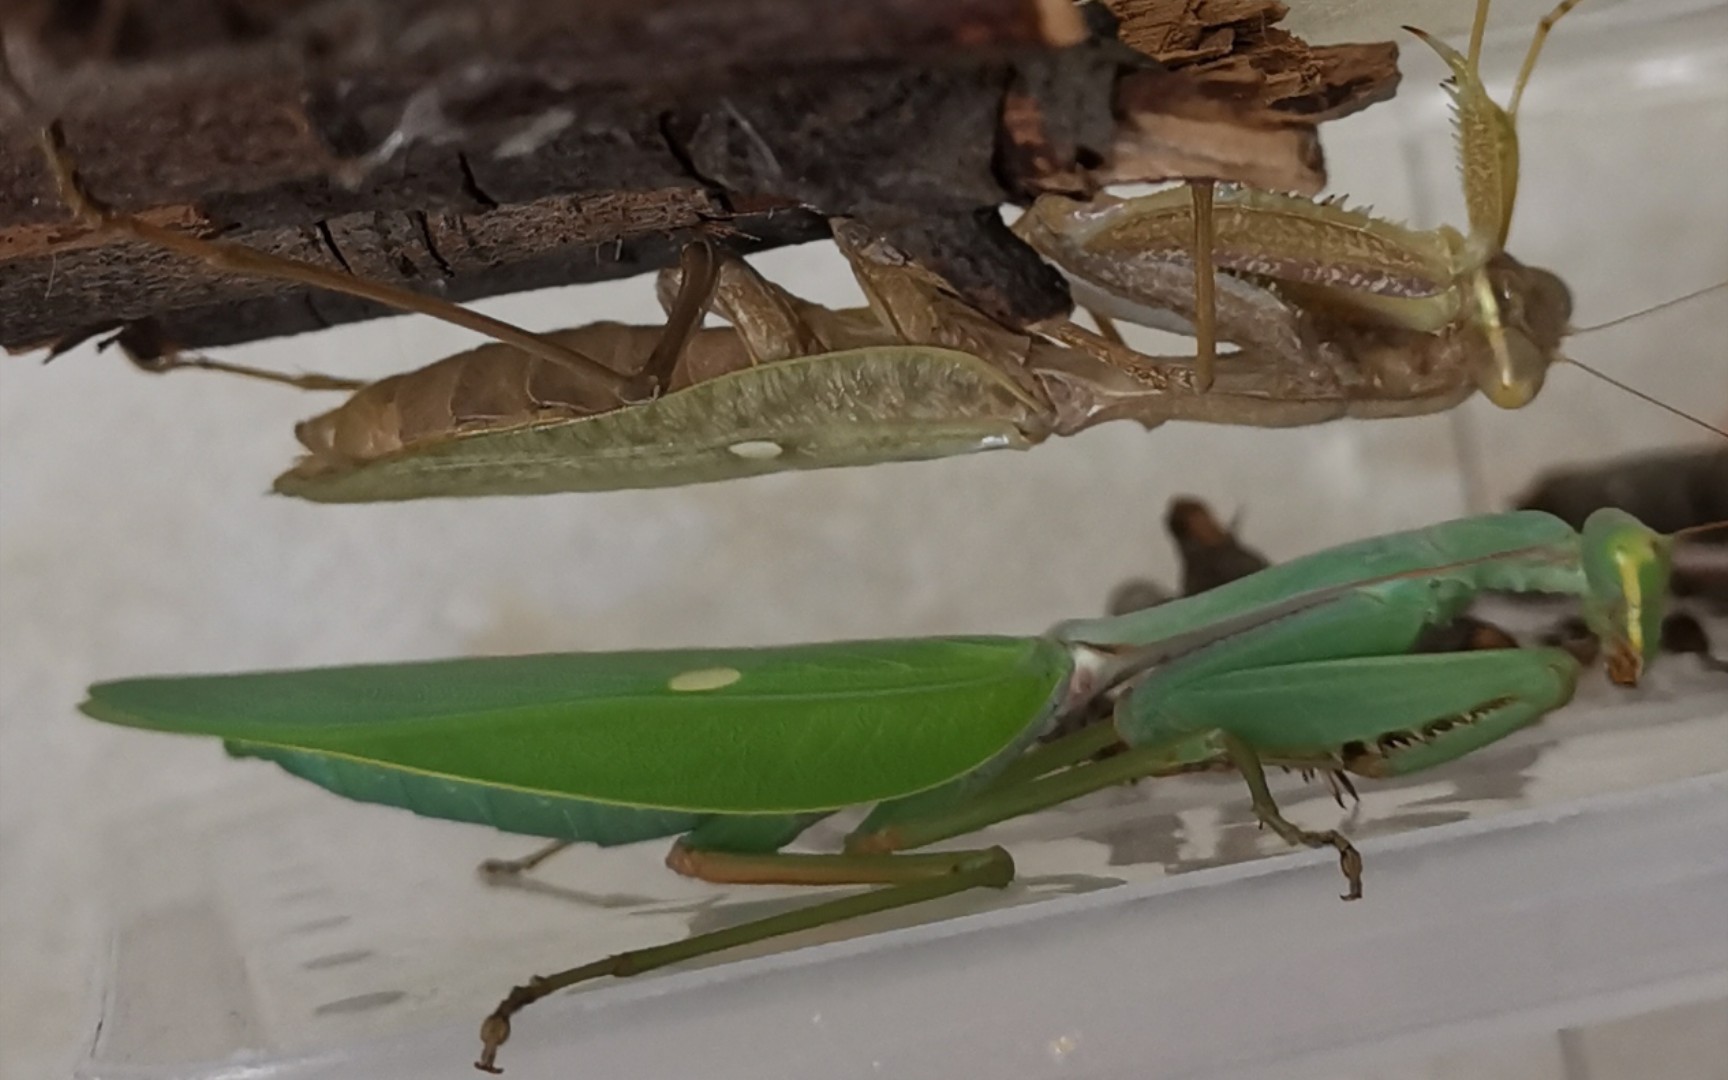 绿巨螳螂vs帝王蝎图片